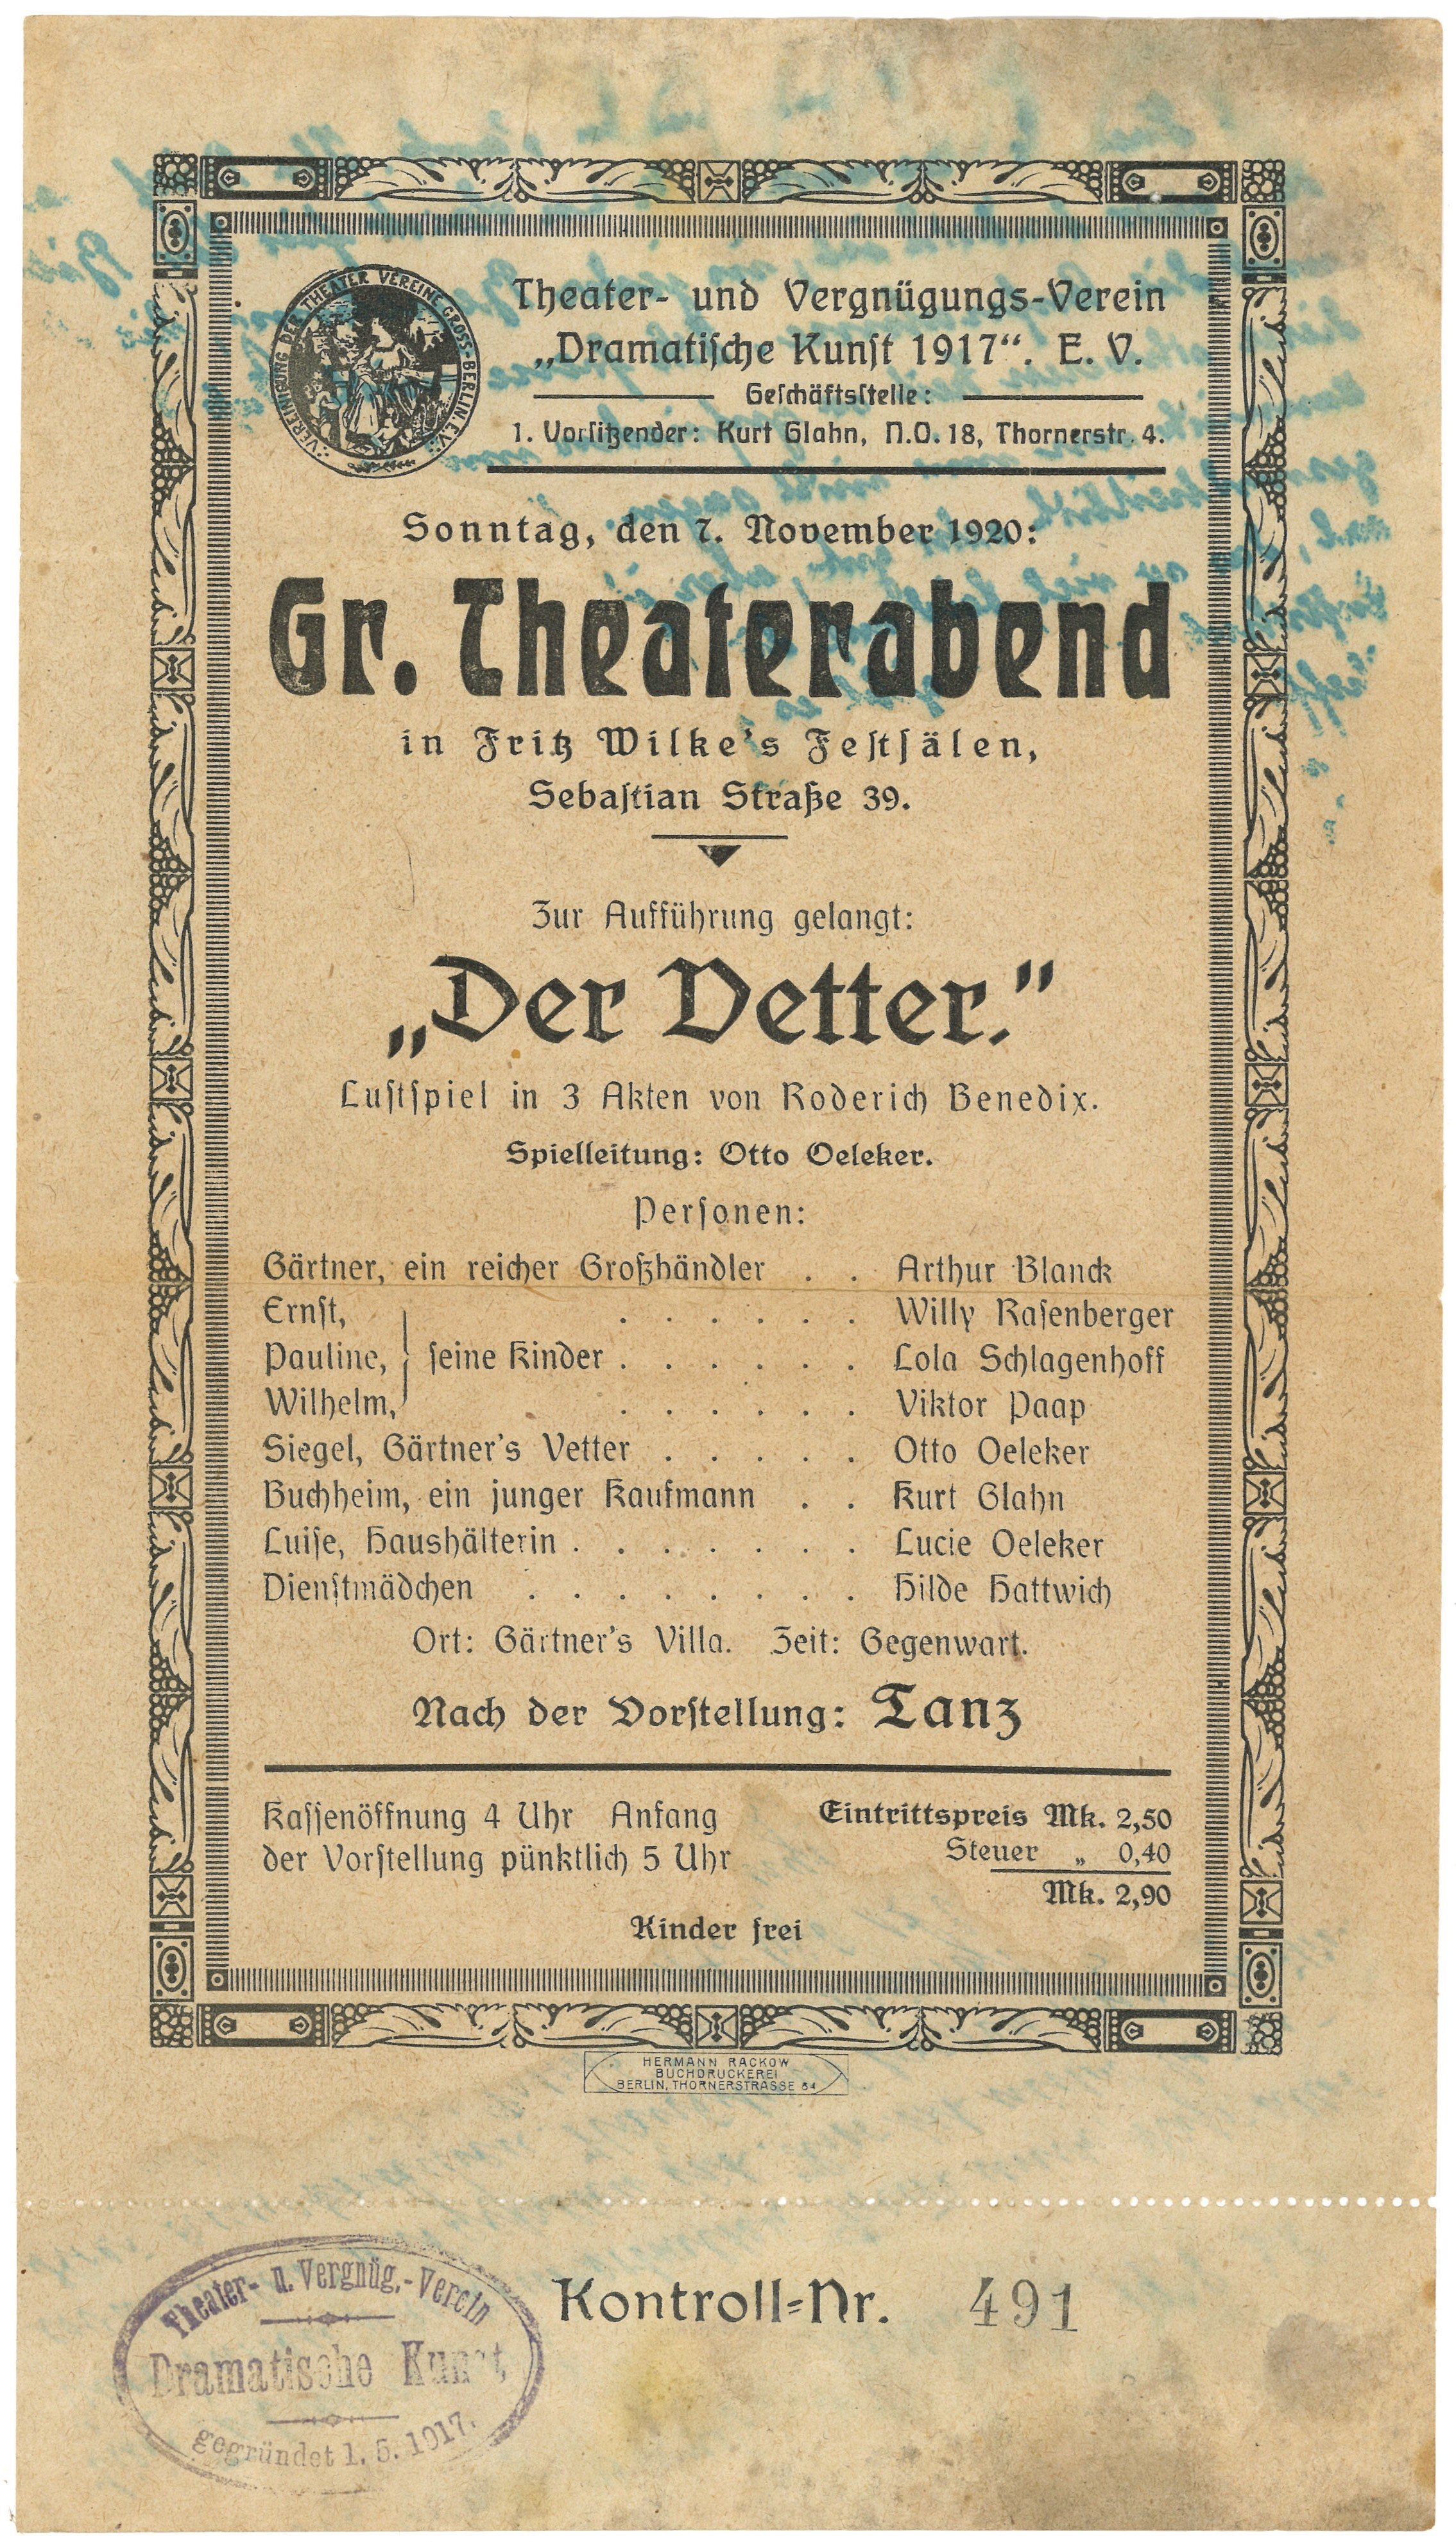 Theaterzettel des Theater- und Vergnügungs-Vereins "Dramatische Kunst 1917" in Berlin für "Der Vetter" 1920 (Landesgeschichtliche Vereinigung für die Mark Brandenburg e.V., Archiv CC BY)